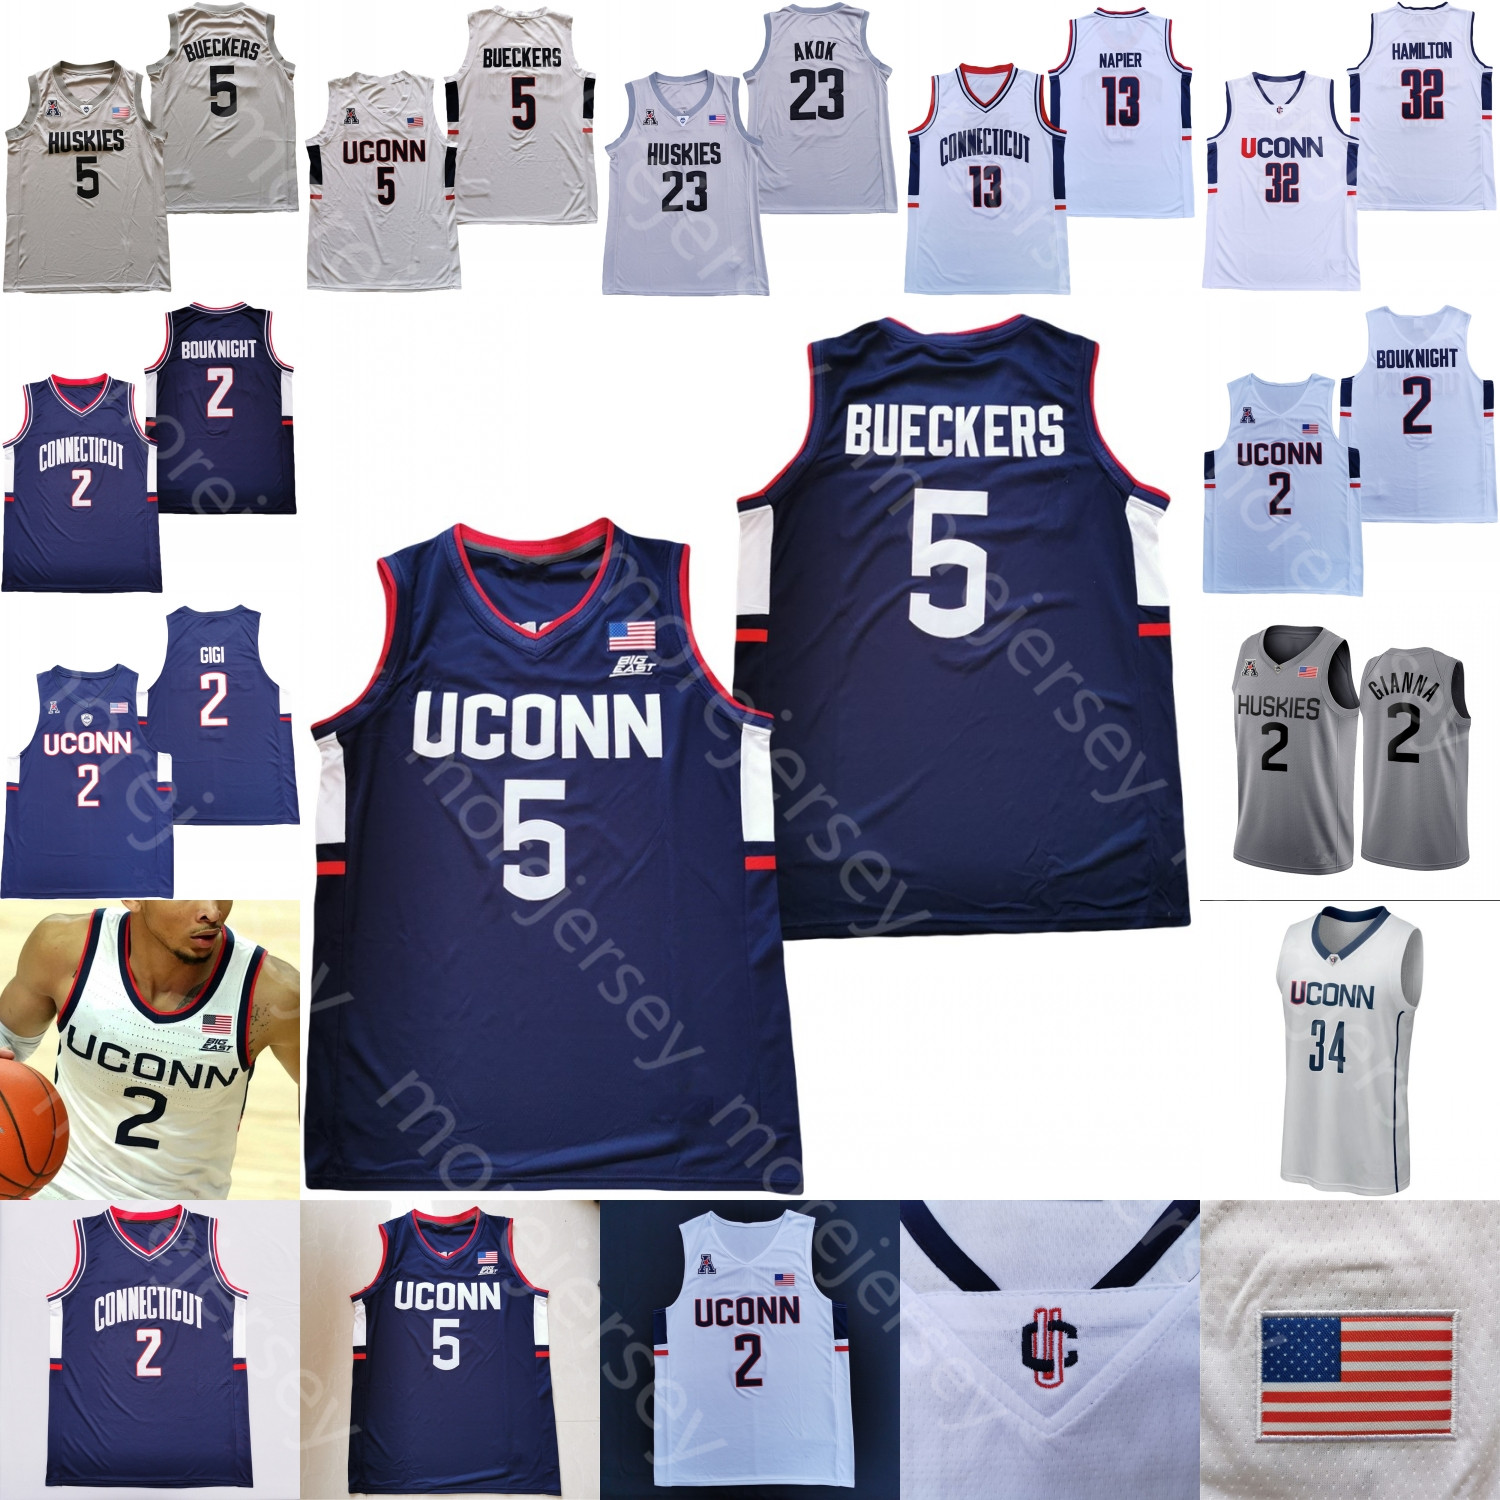 Limited Edition 🔥 UConn Men's Retro Connecticut Jerseys now